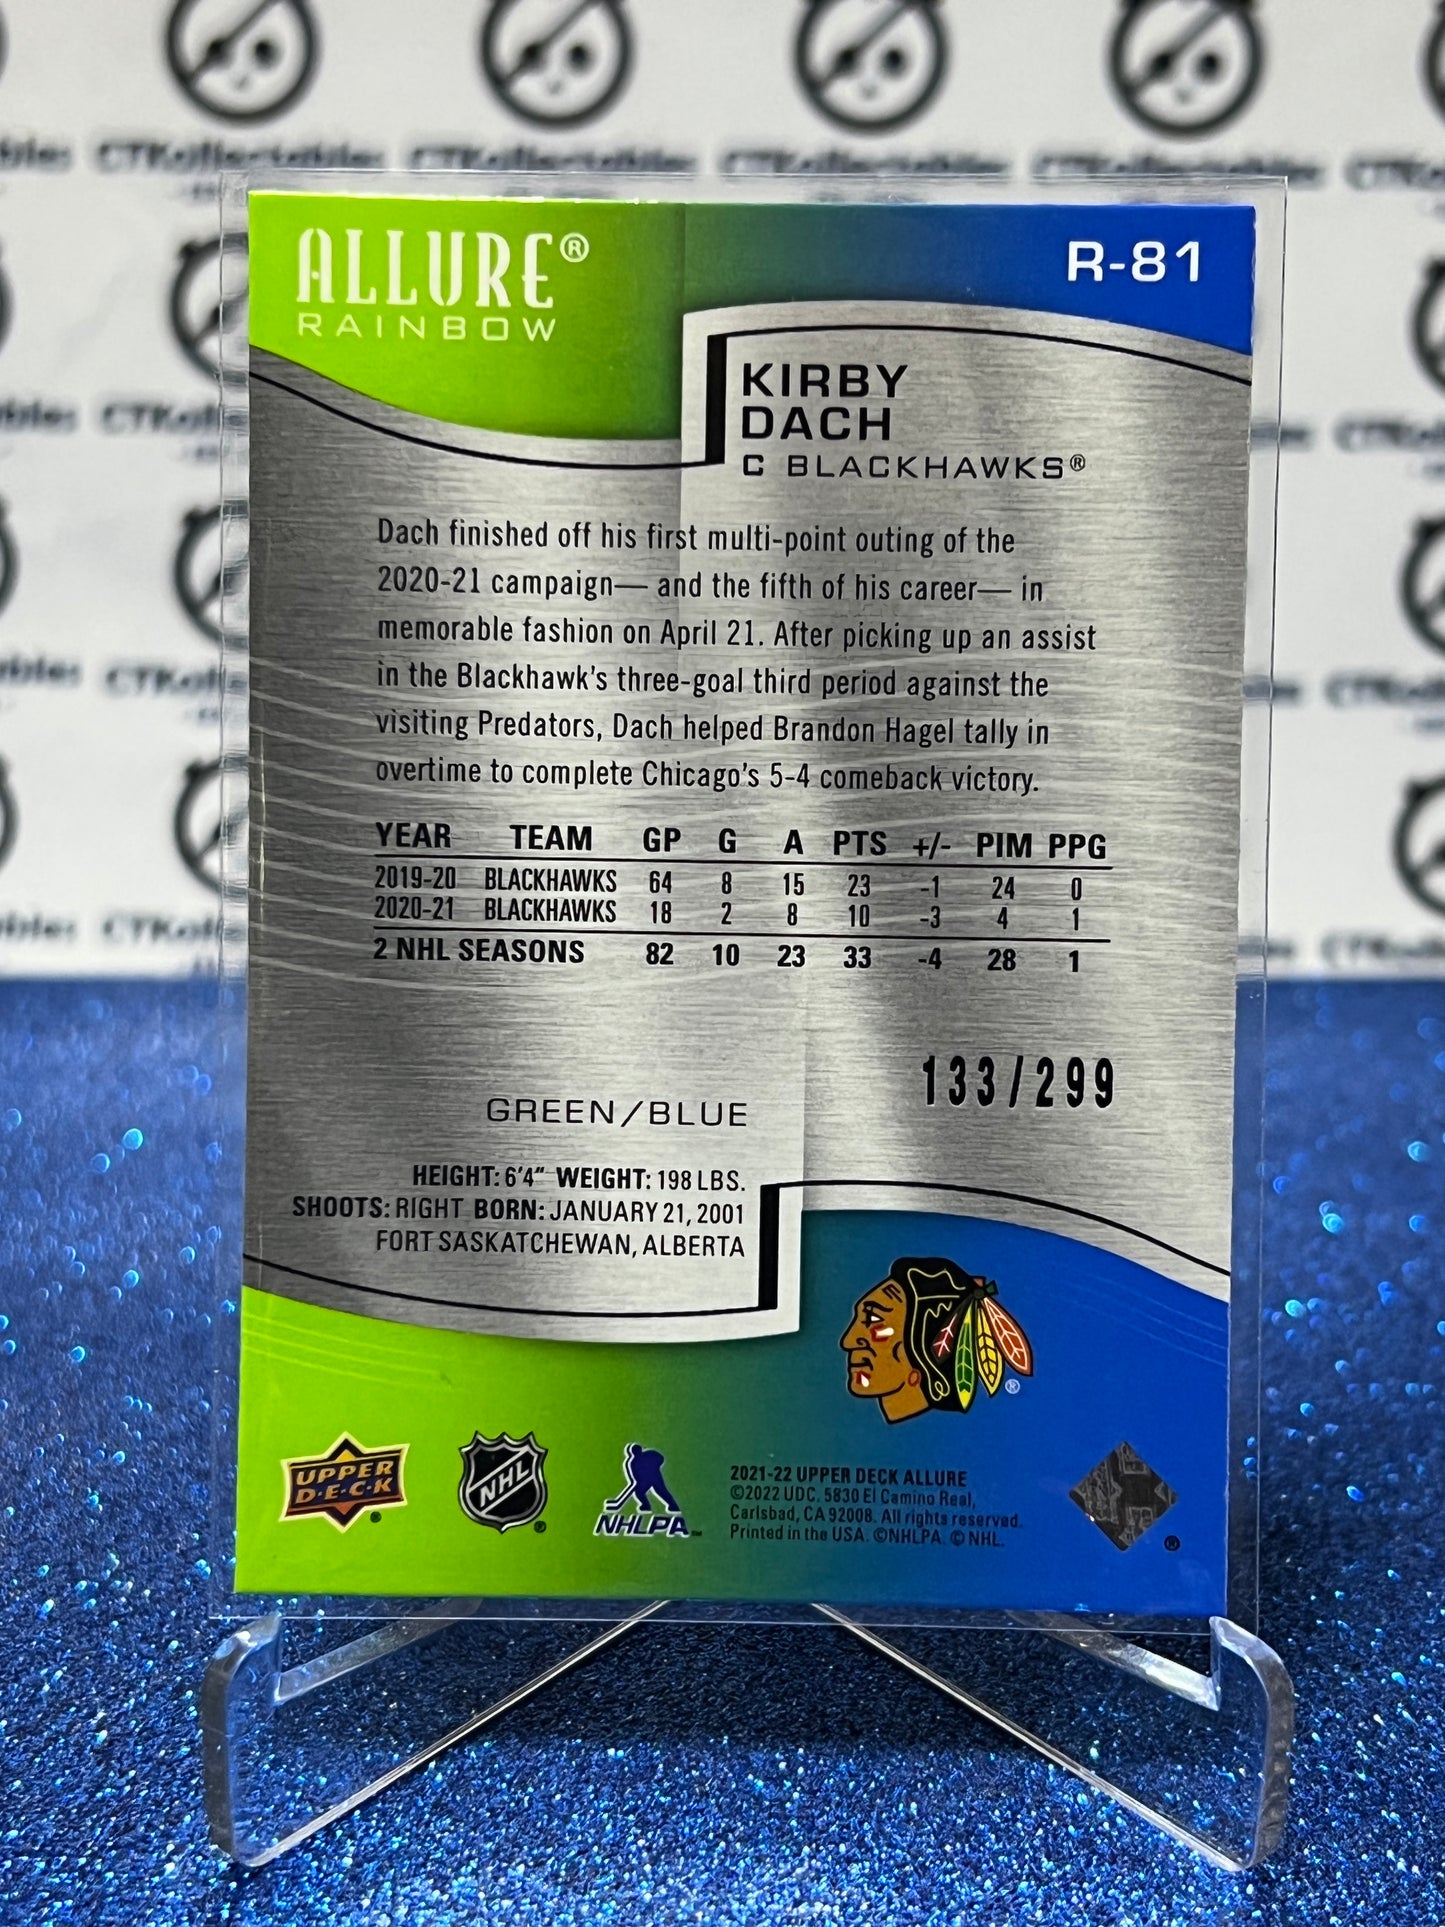 2021-22 UPPER DECK ALLURE KIRBY DACH # R-81 GREEN/BLUE RAINBOW  CHICAGO BLACKHAWKS NHL HOCKEY CARD